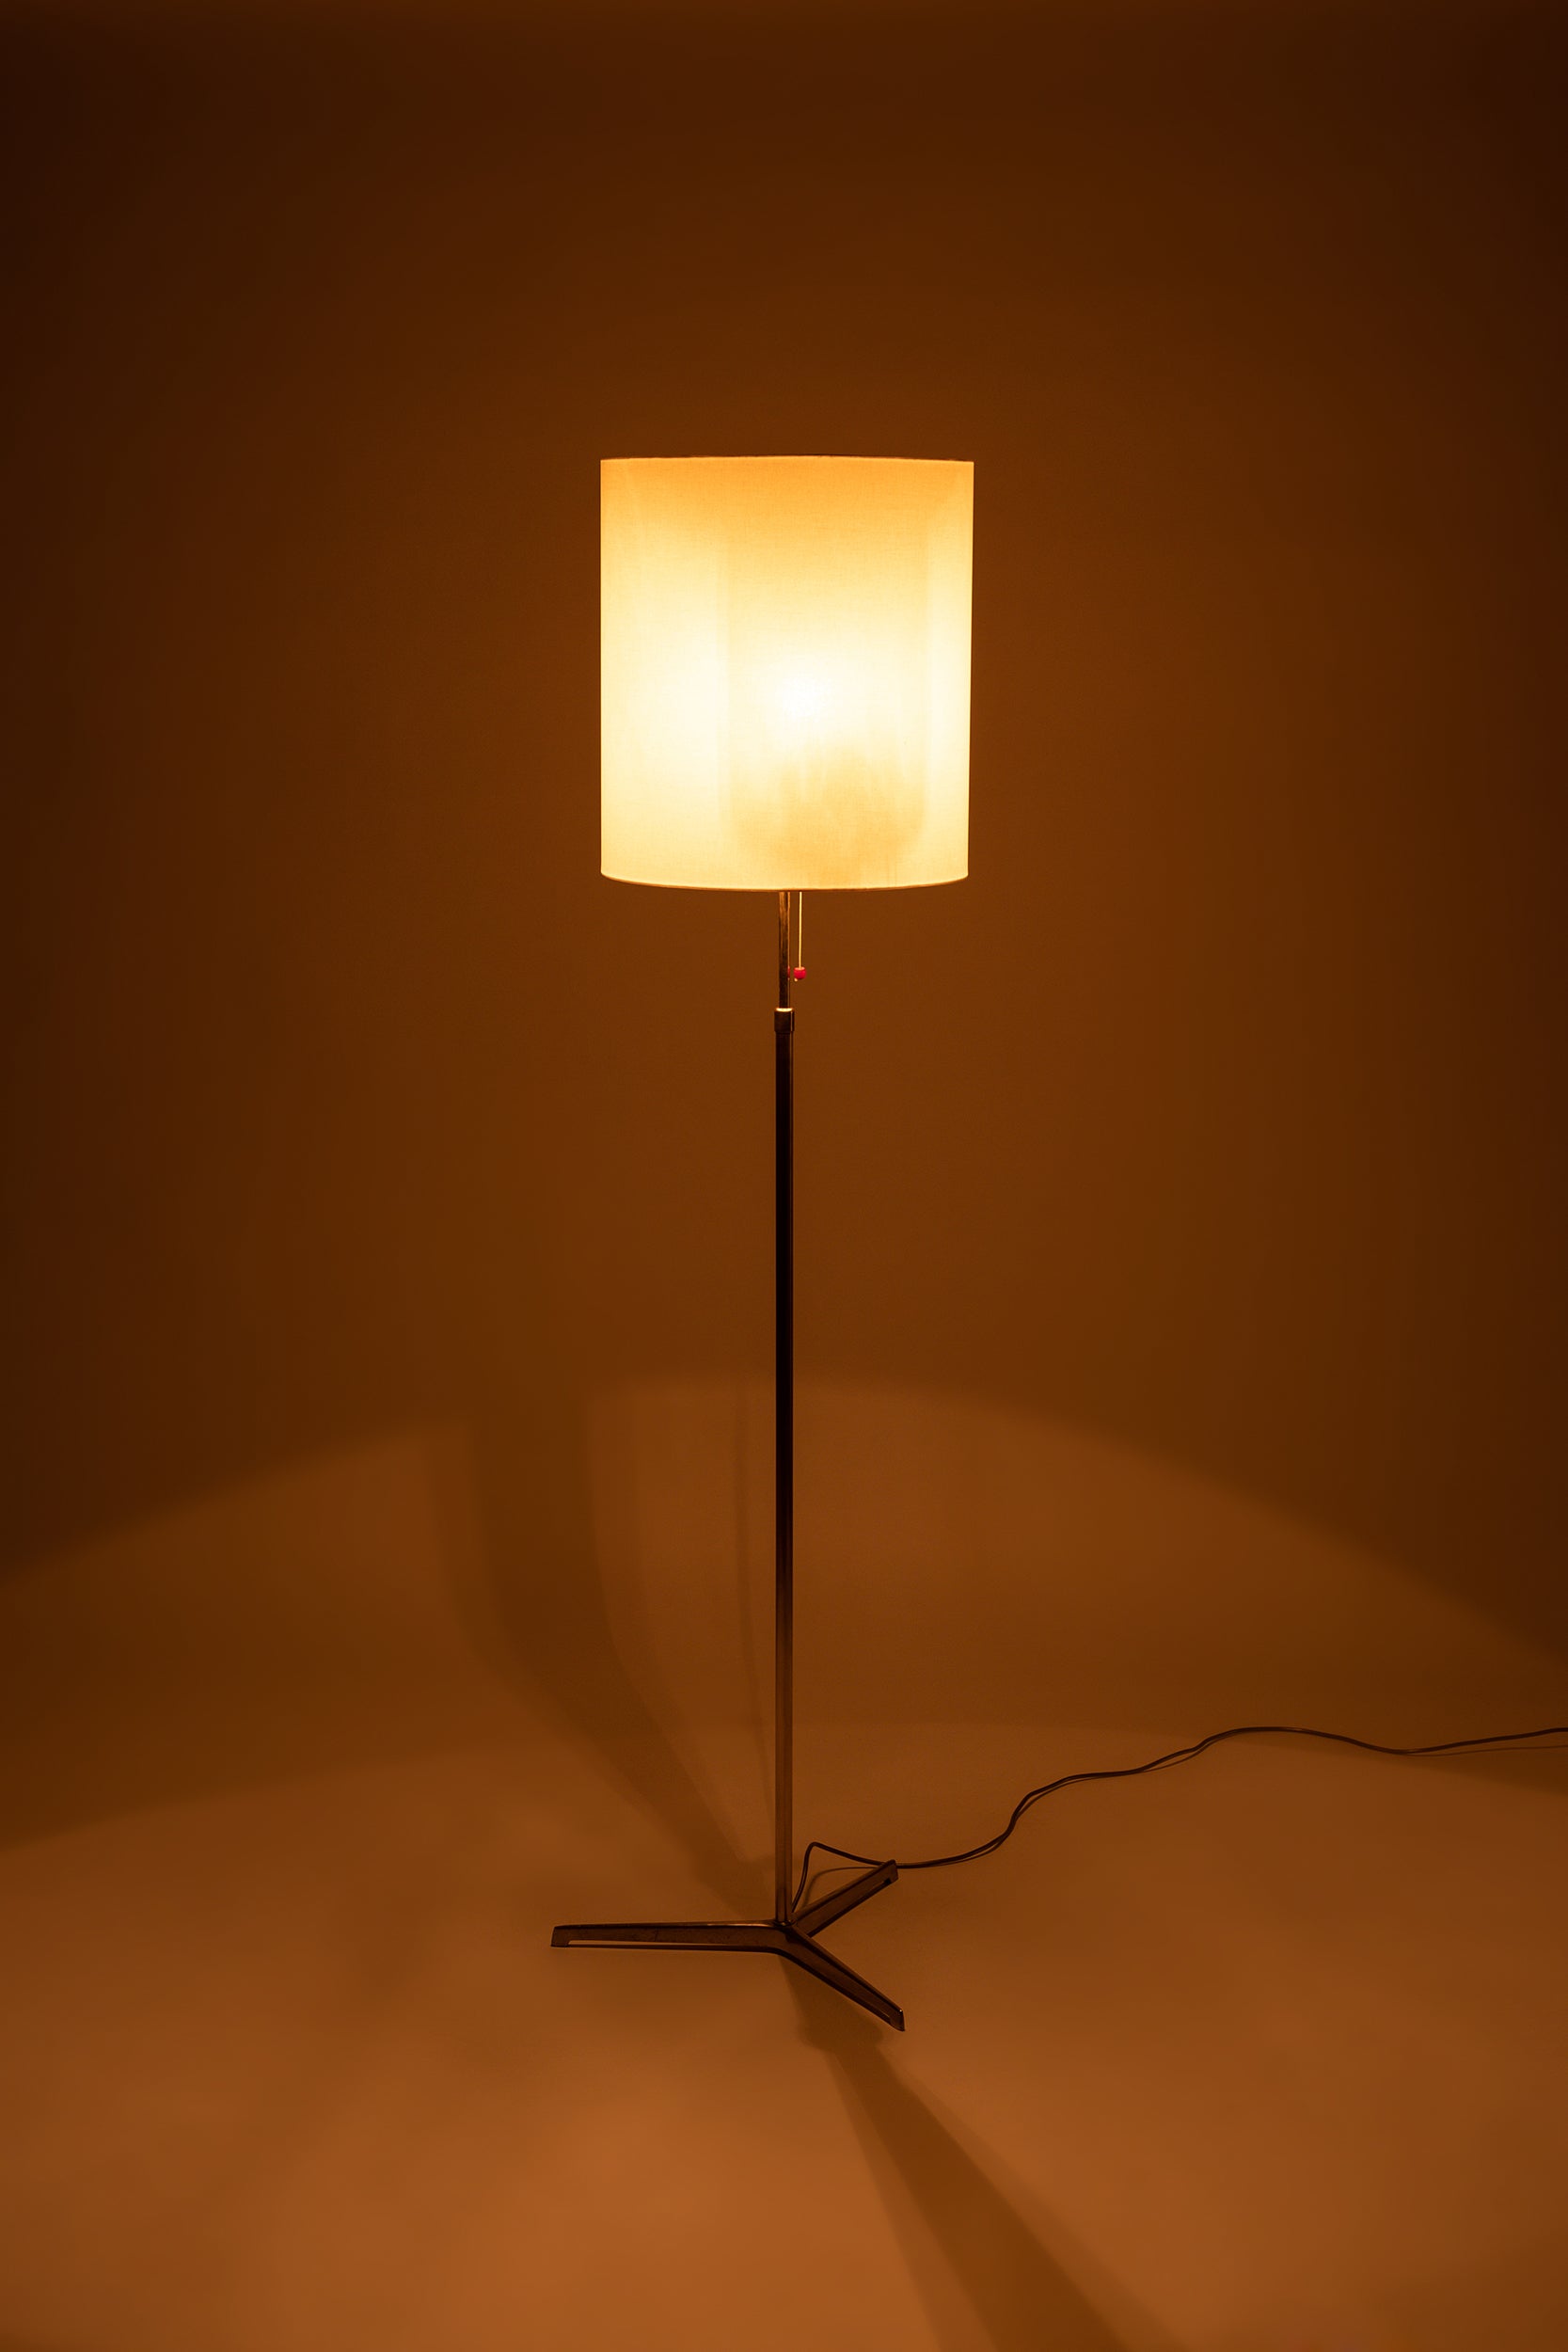 Grosse Messing Stehlampe mit Seidenschirm, Höhenverstellbar, BAG Turgi, 50er